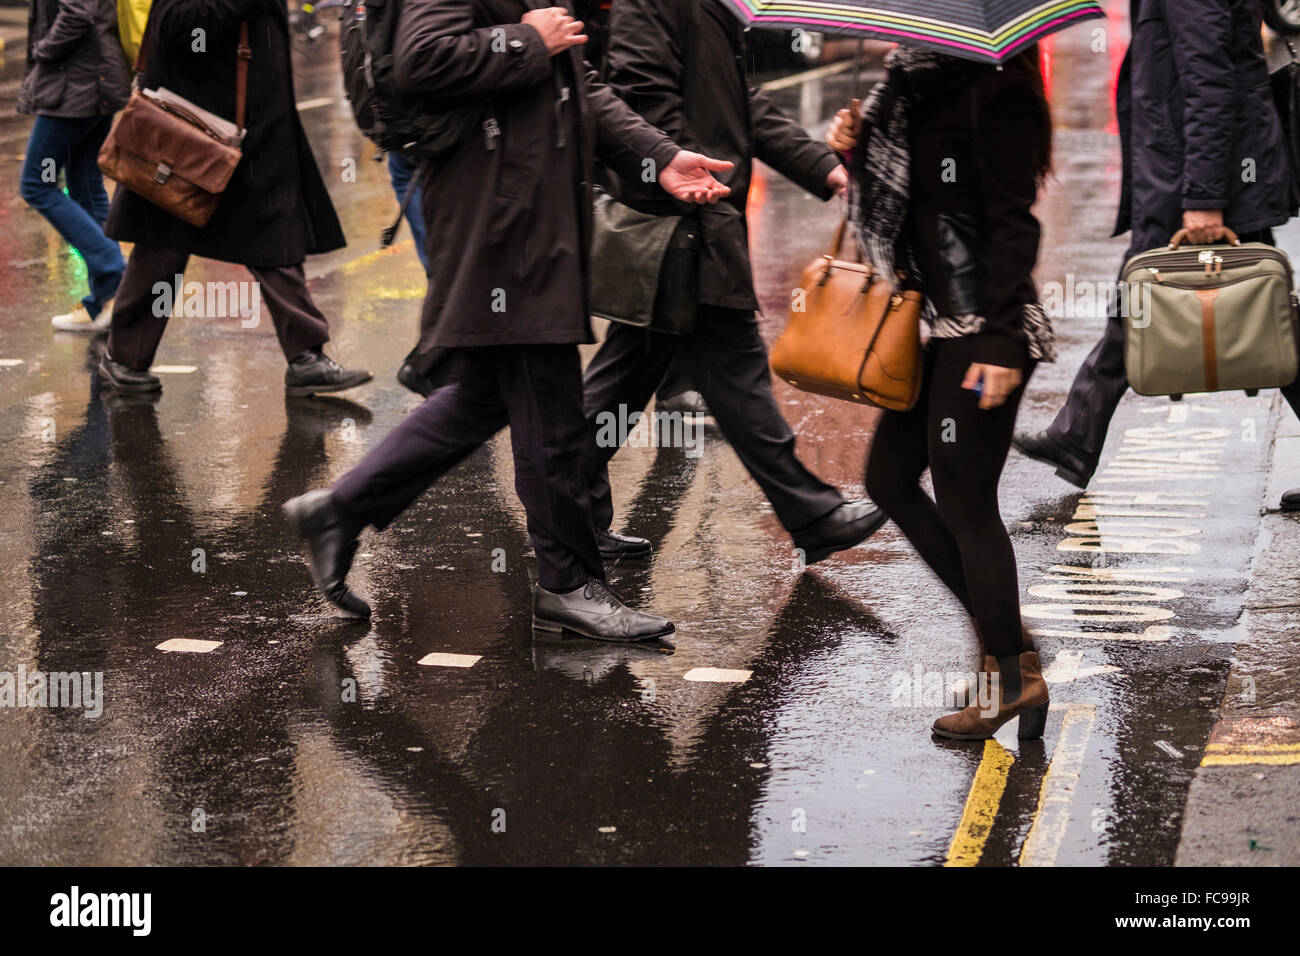 Les personnes qui traversent Road, Londres, Angleterre, Royaume-Uni Banque D'Images